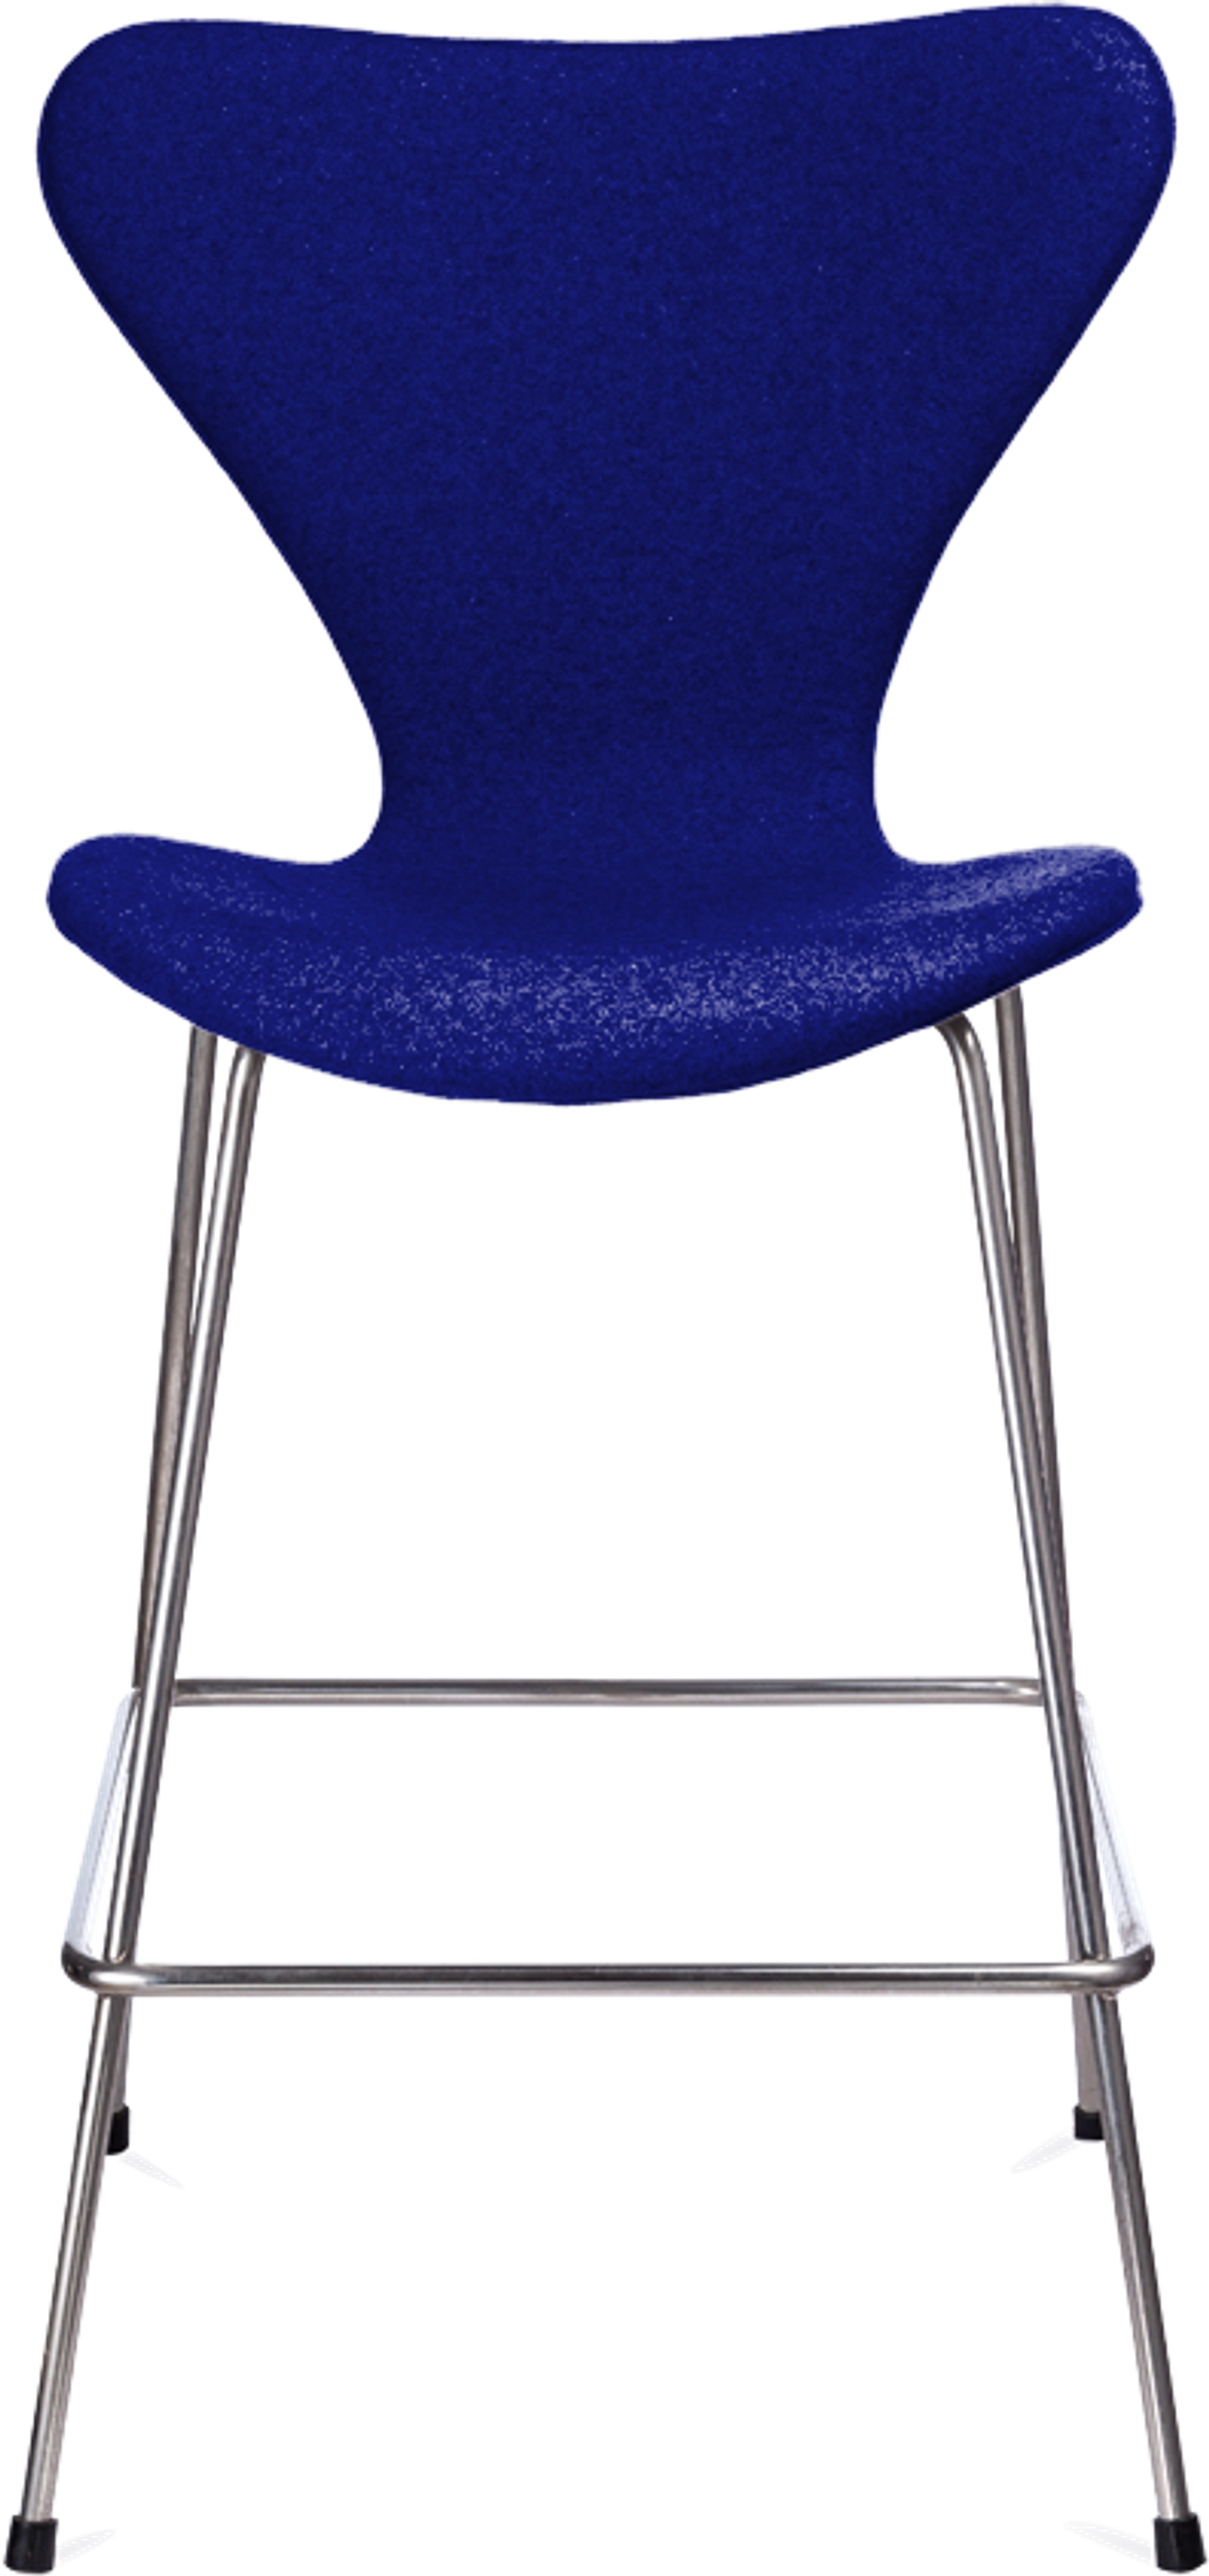 Serie 7 barstol stoppad med klädsel Blue image.